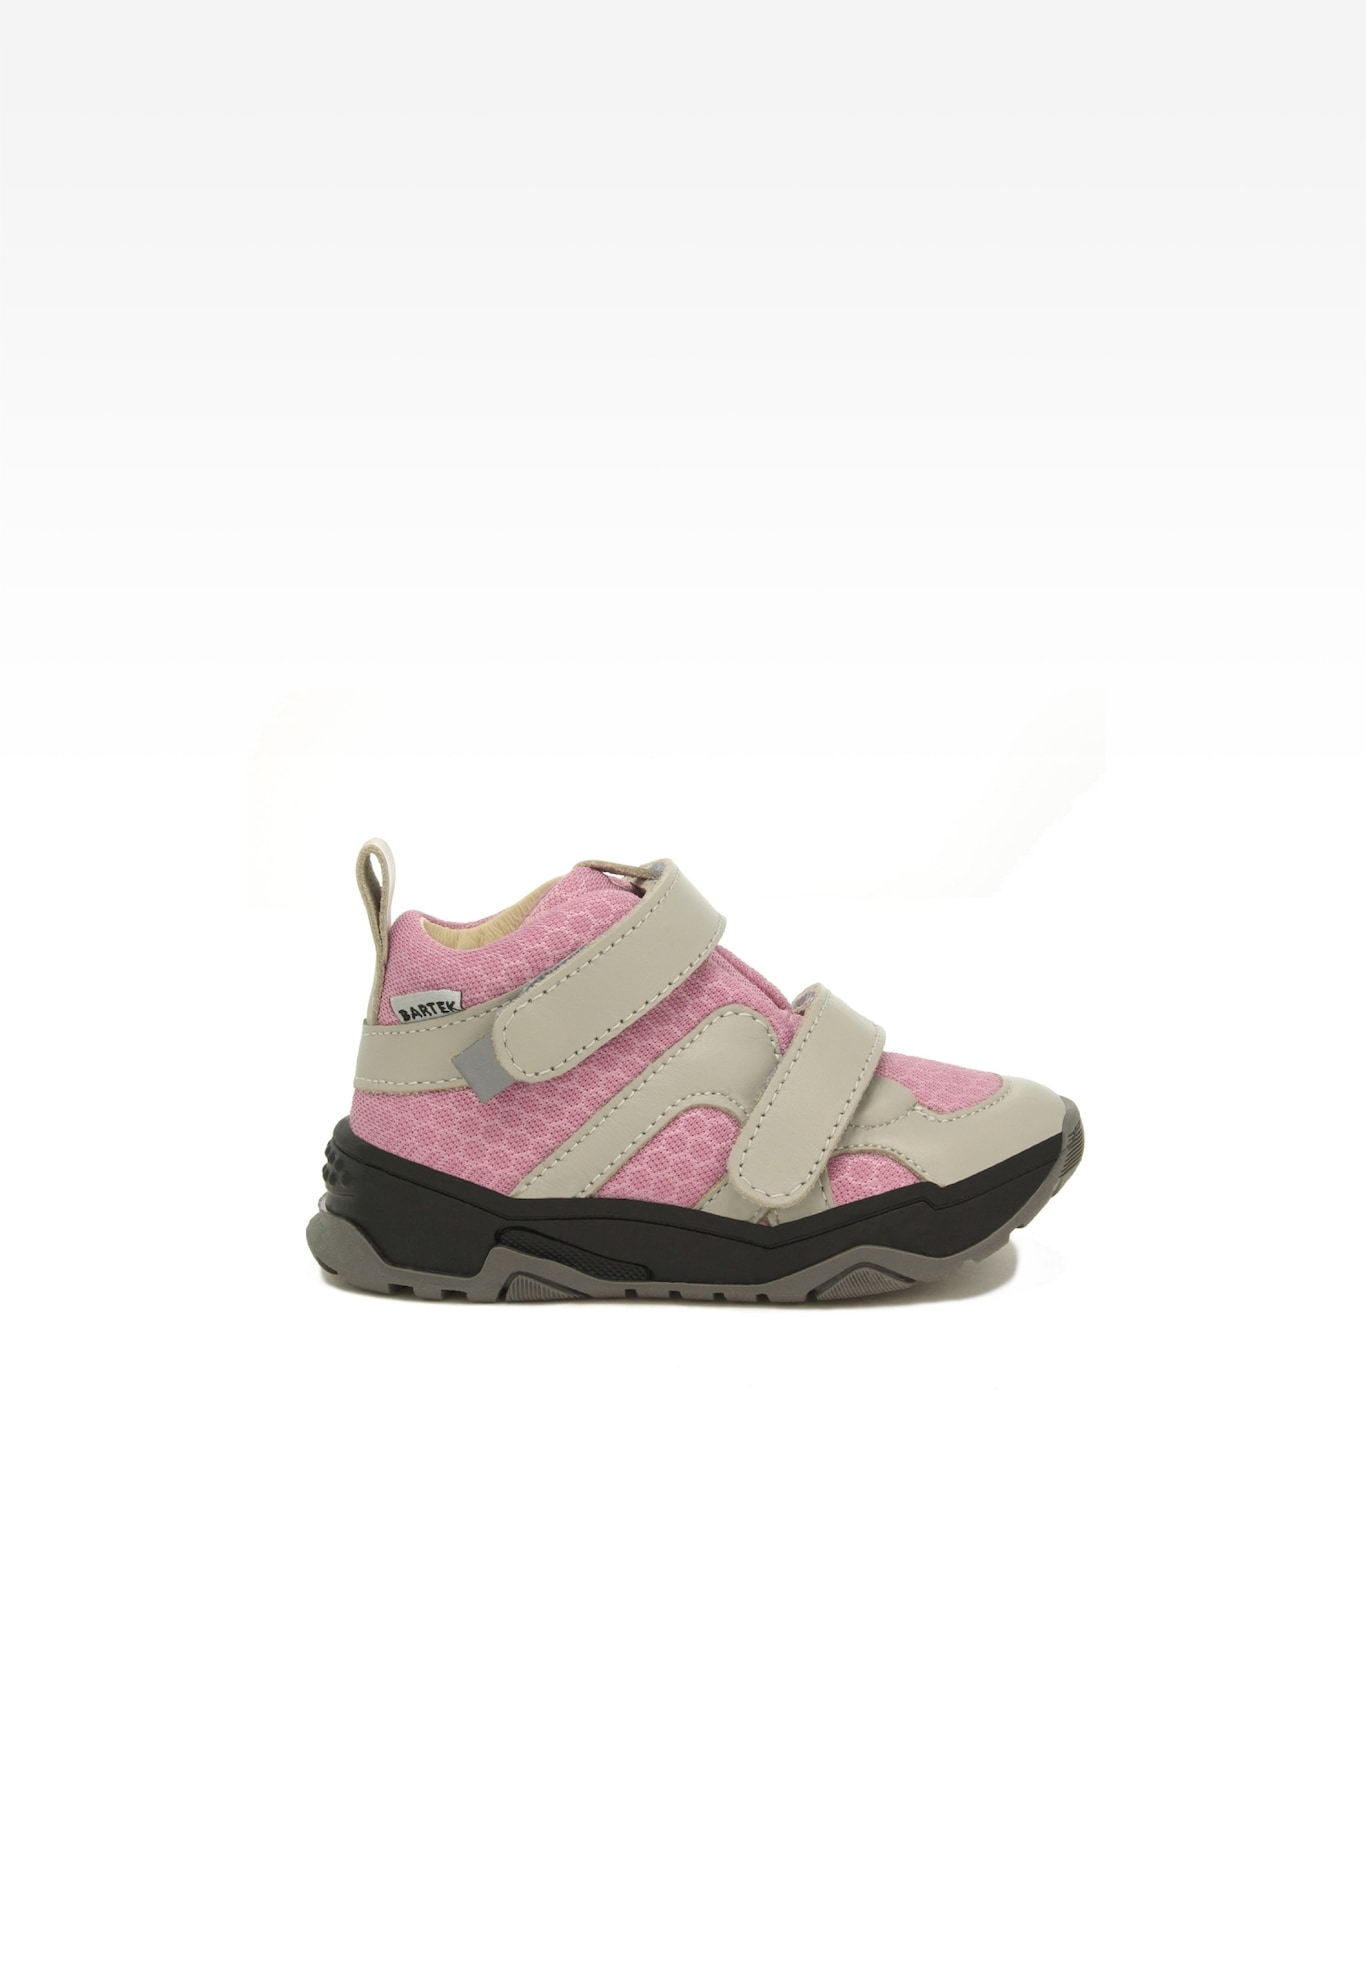 Sneakers BARTEK 11711002, dla dziewcząt, różowo-beżowy